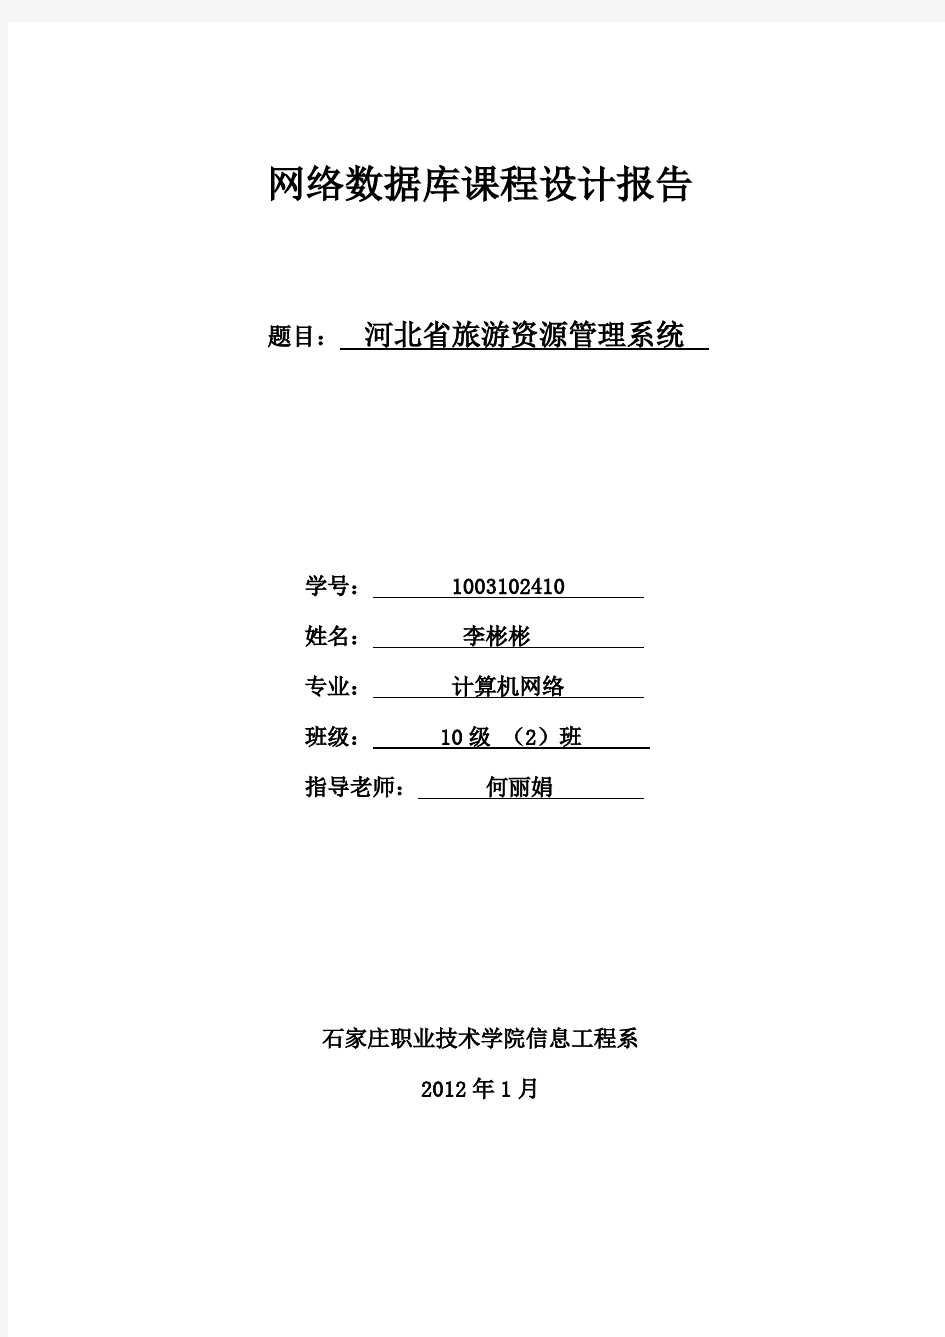 河北省旅游资源管理系统